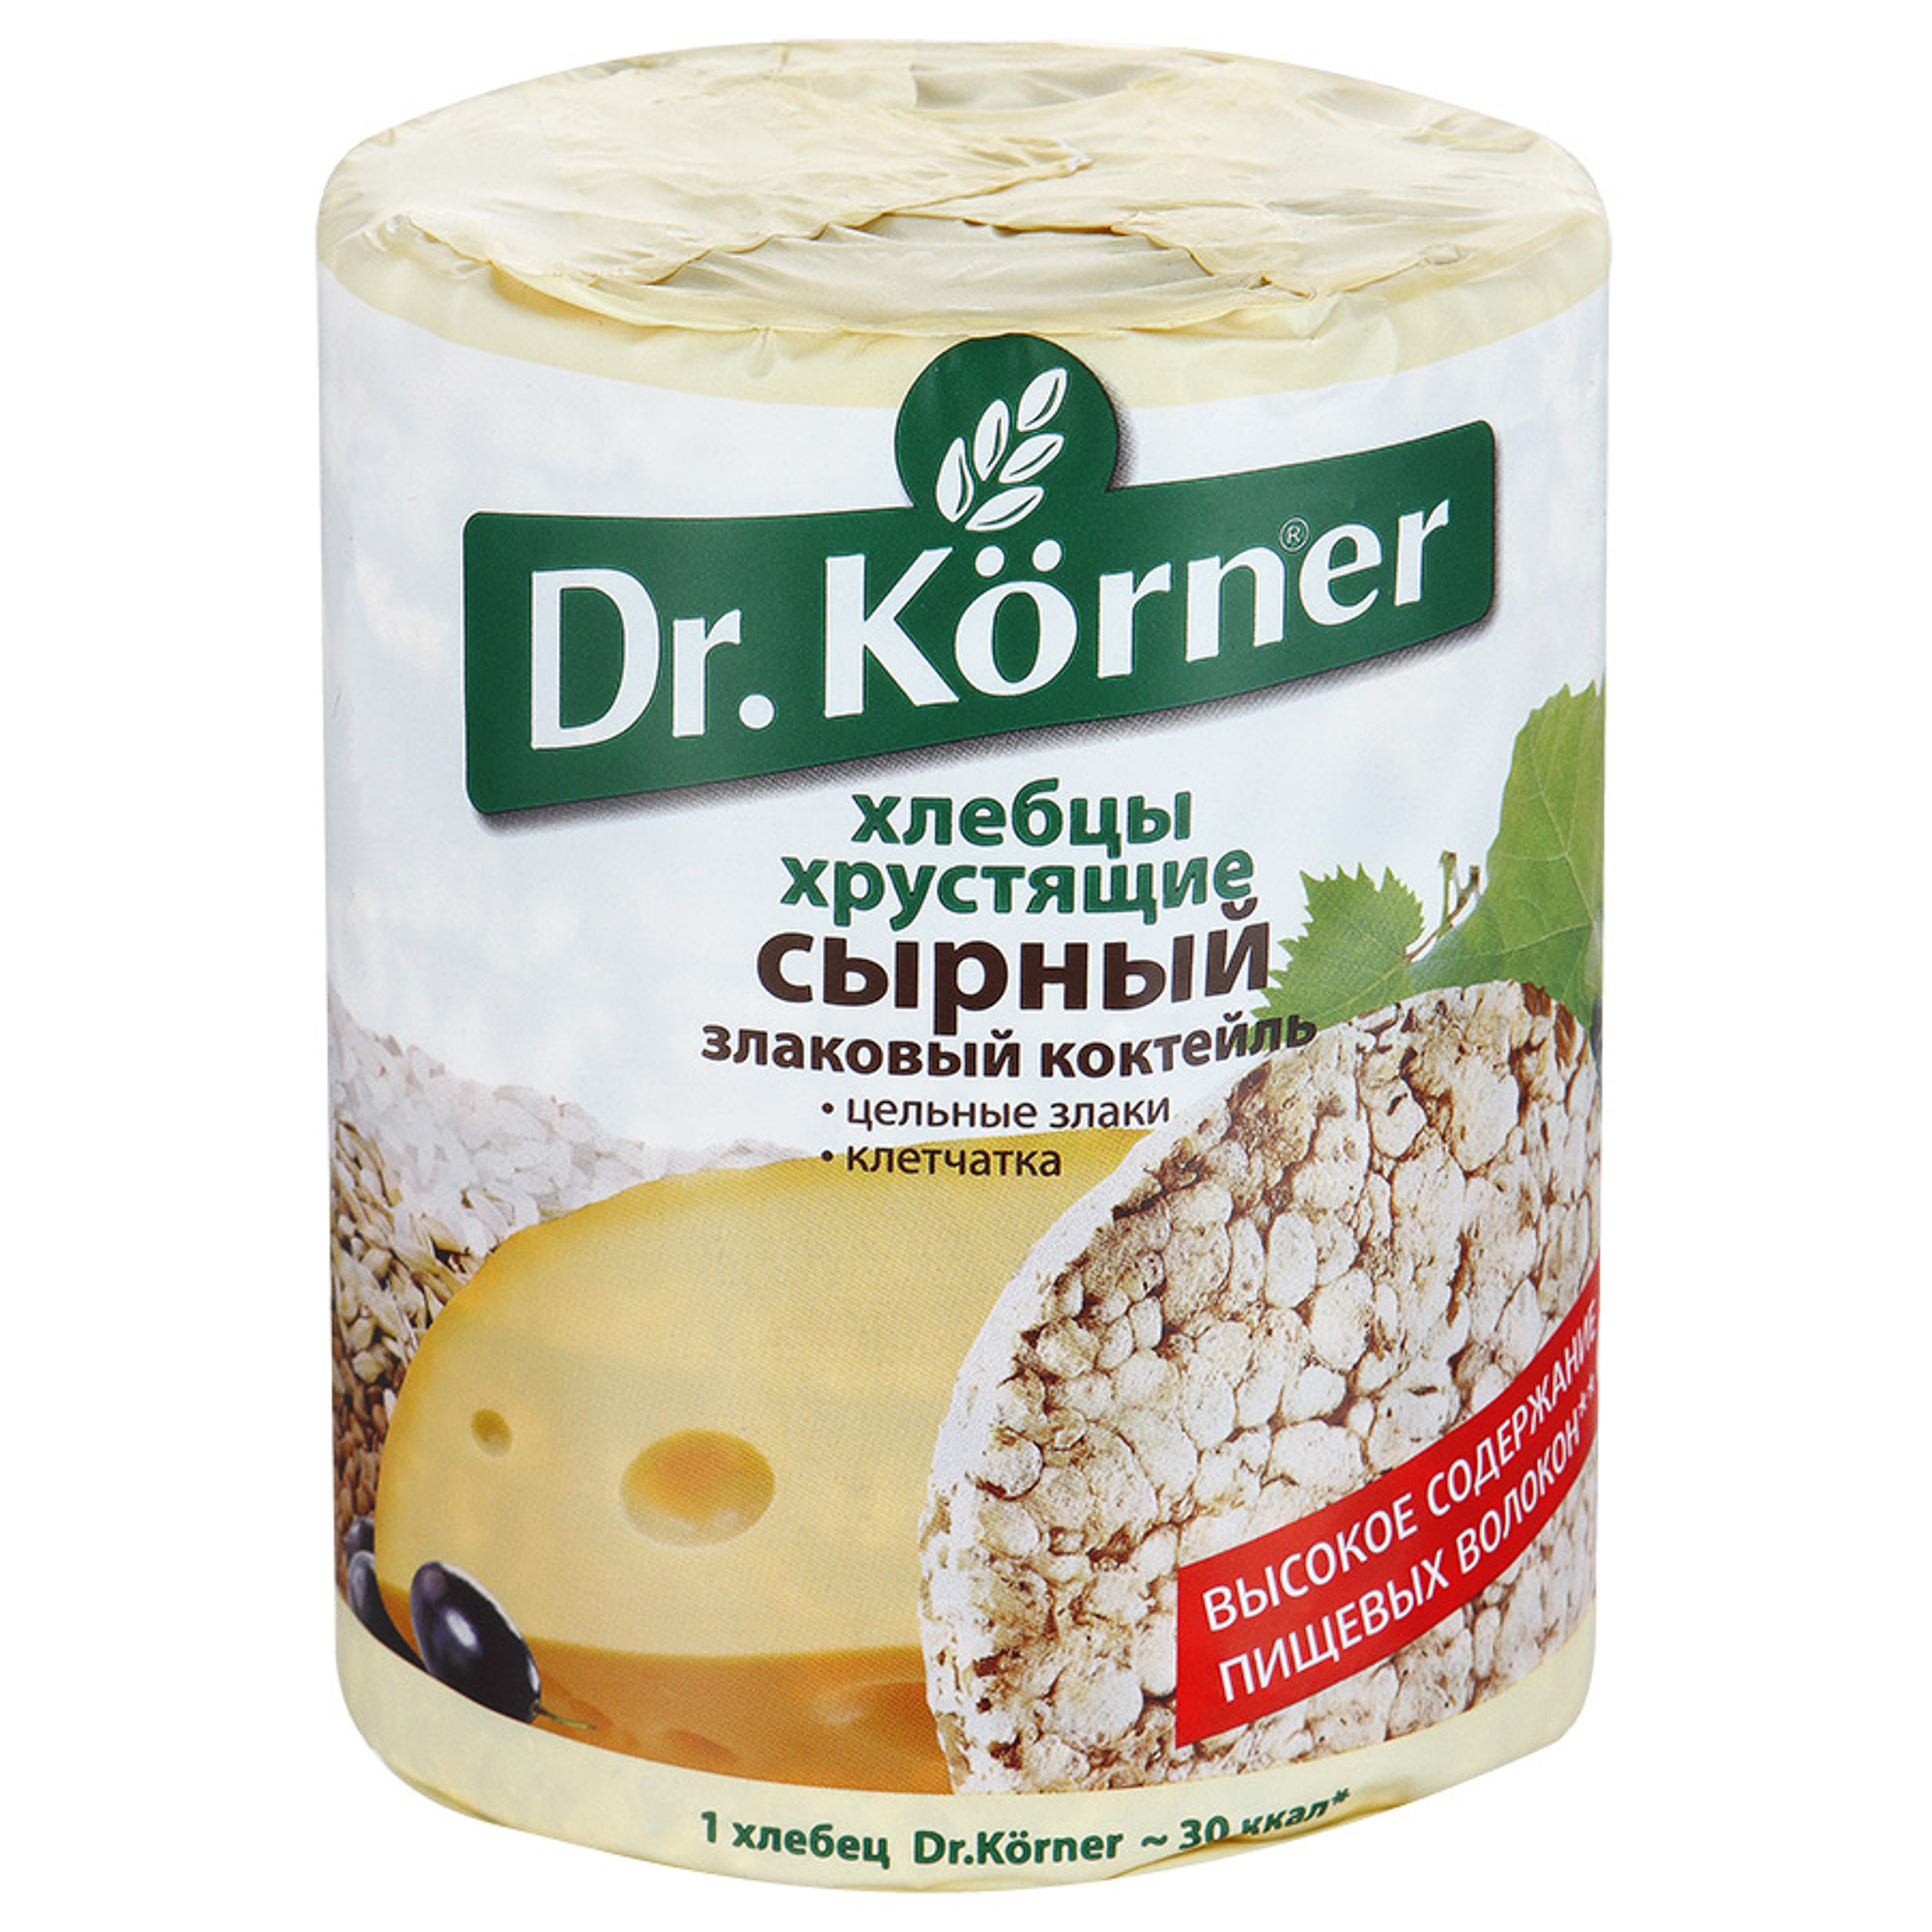 Хлебцы хрустящие Dr. Korner Злаковый коктейль сырный 100 г нескучные завтраки